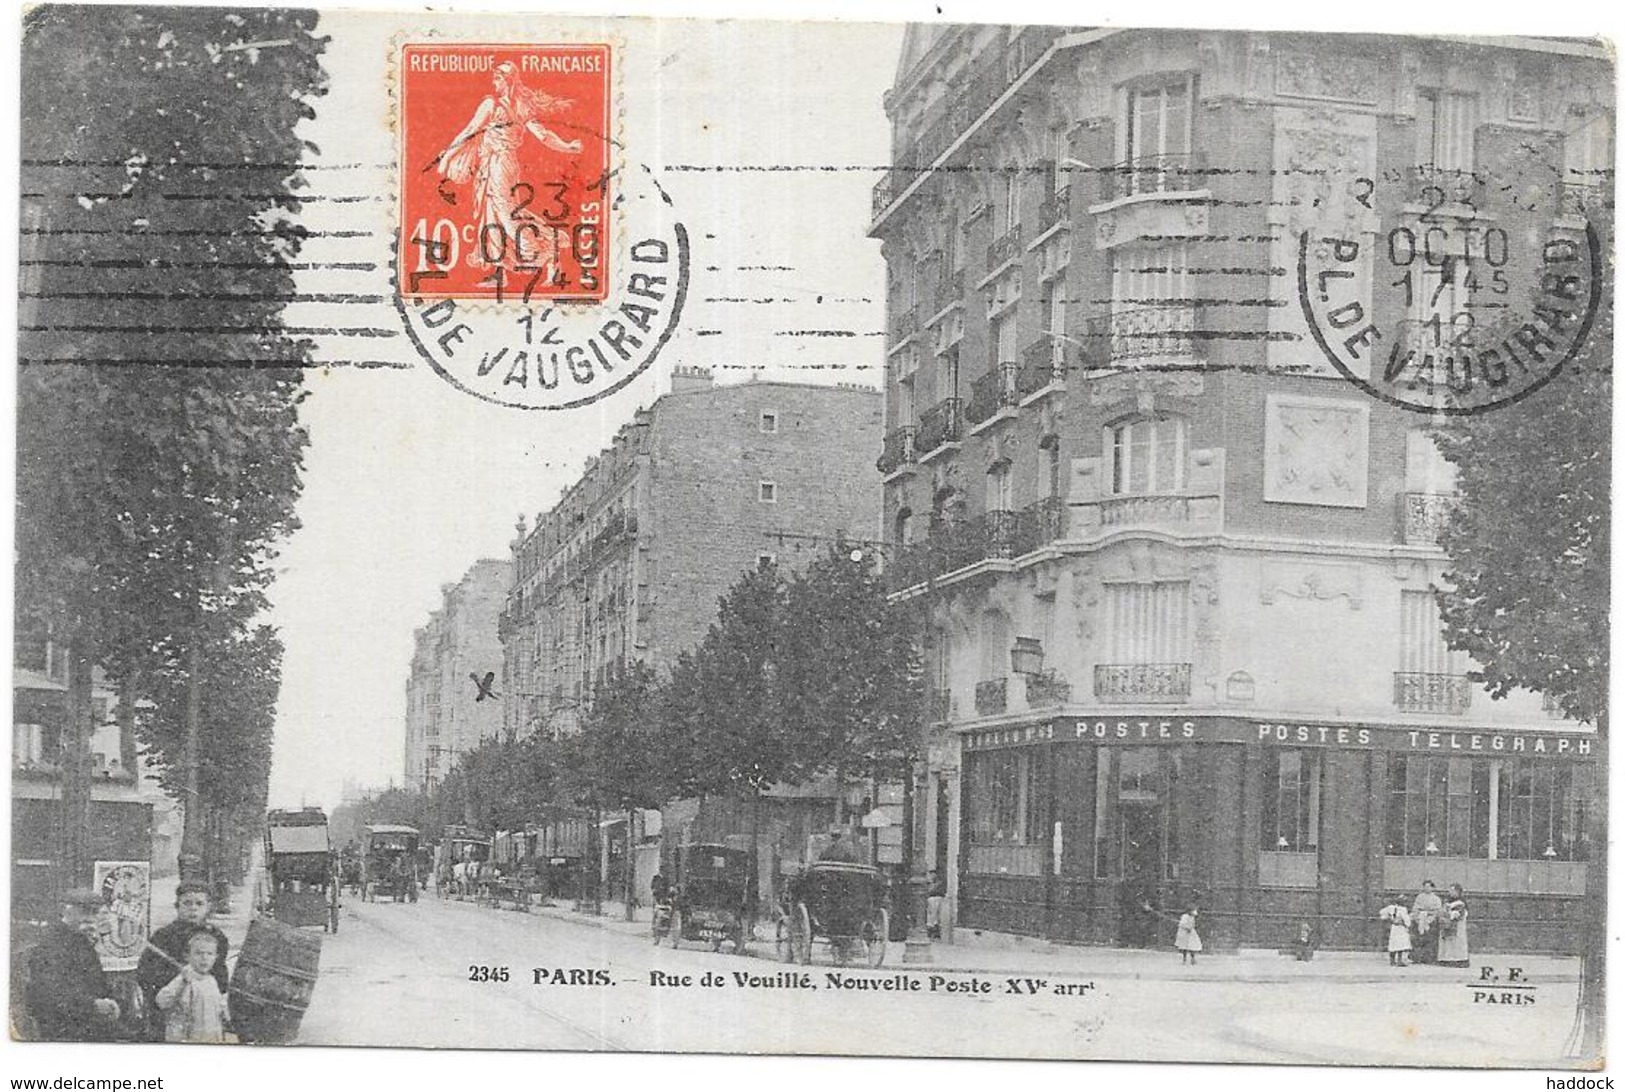 PARIS: RUE DE VOUILLE - NOUVELLE POSTE - Arrondissement: 15